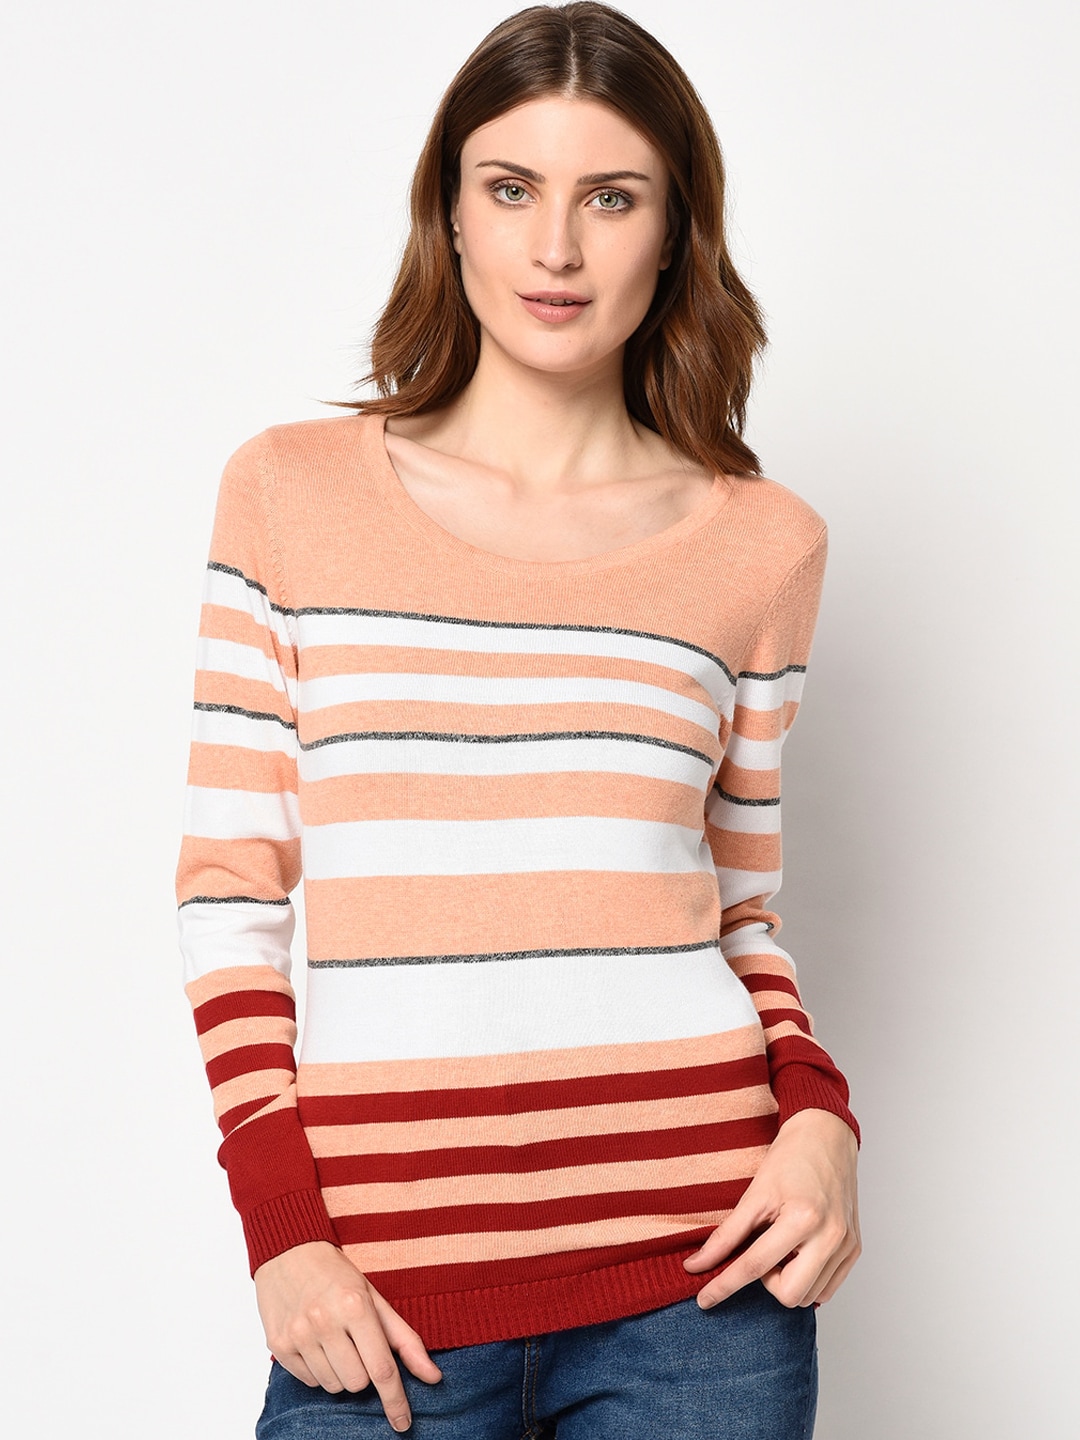 98 Degree North Women Peach-Coloured & White Striped Pullover Sweater Price in India